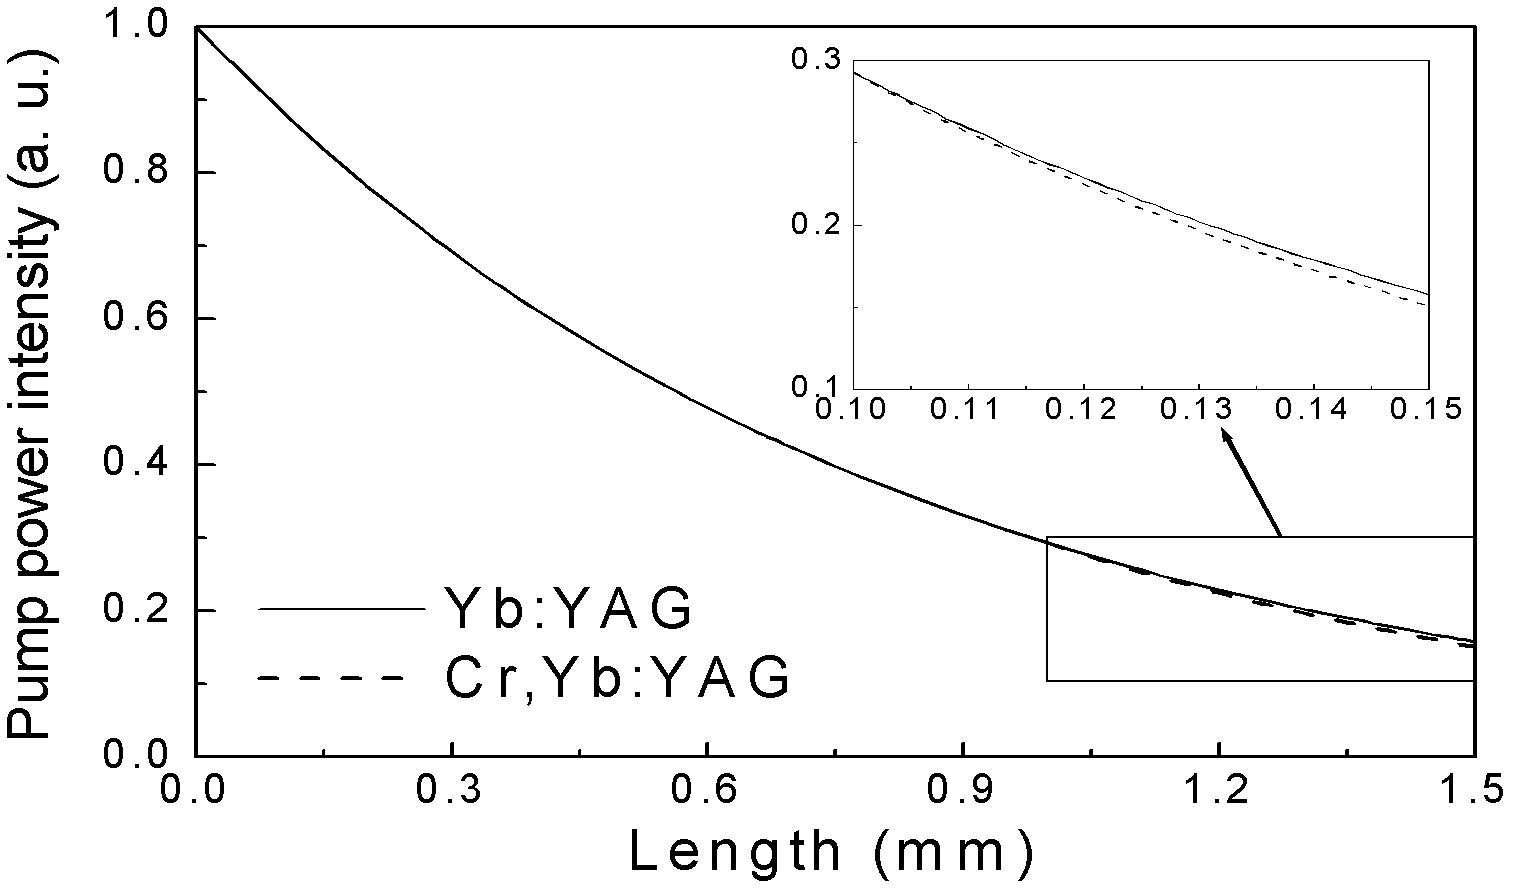 Yb: YAG (yttrium aluminum garnet) and Cr, Yb: YAG self-Q-switching laser